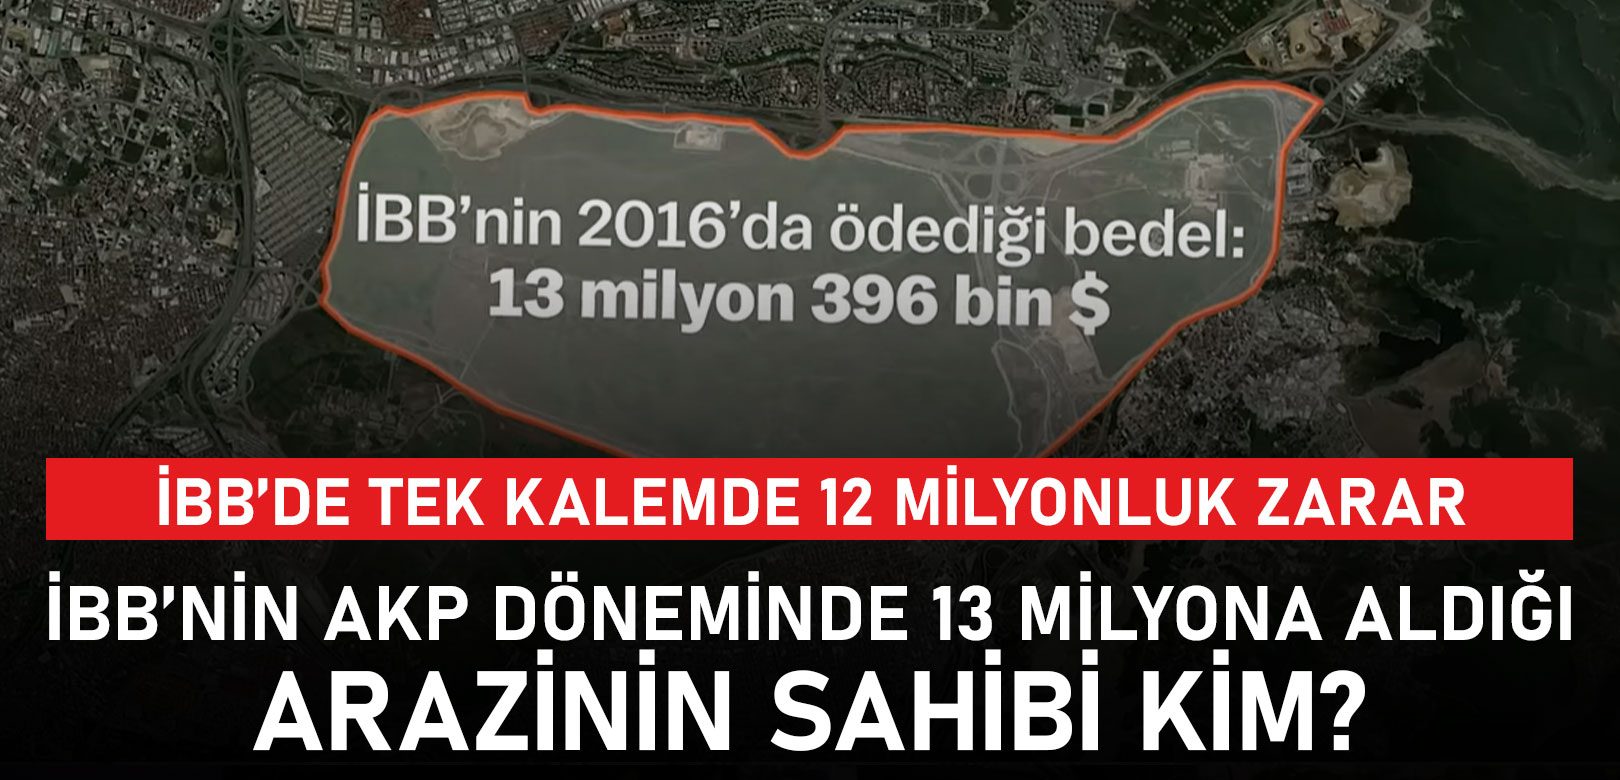 AKP döneminde İBB'nin satın aldığı arazi ile tek kalemle belediye 12 milyon zarar etti, Eski AKP'li kar elde etti